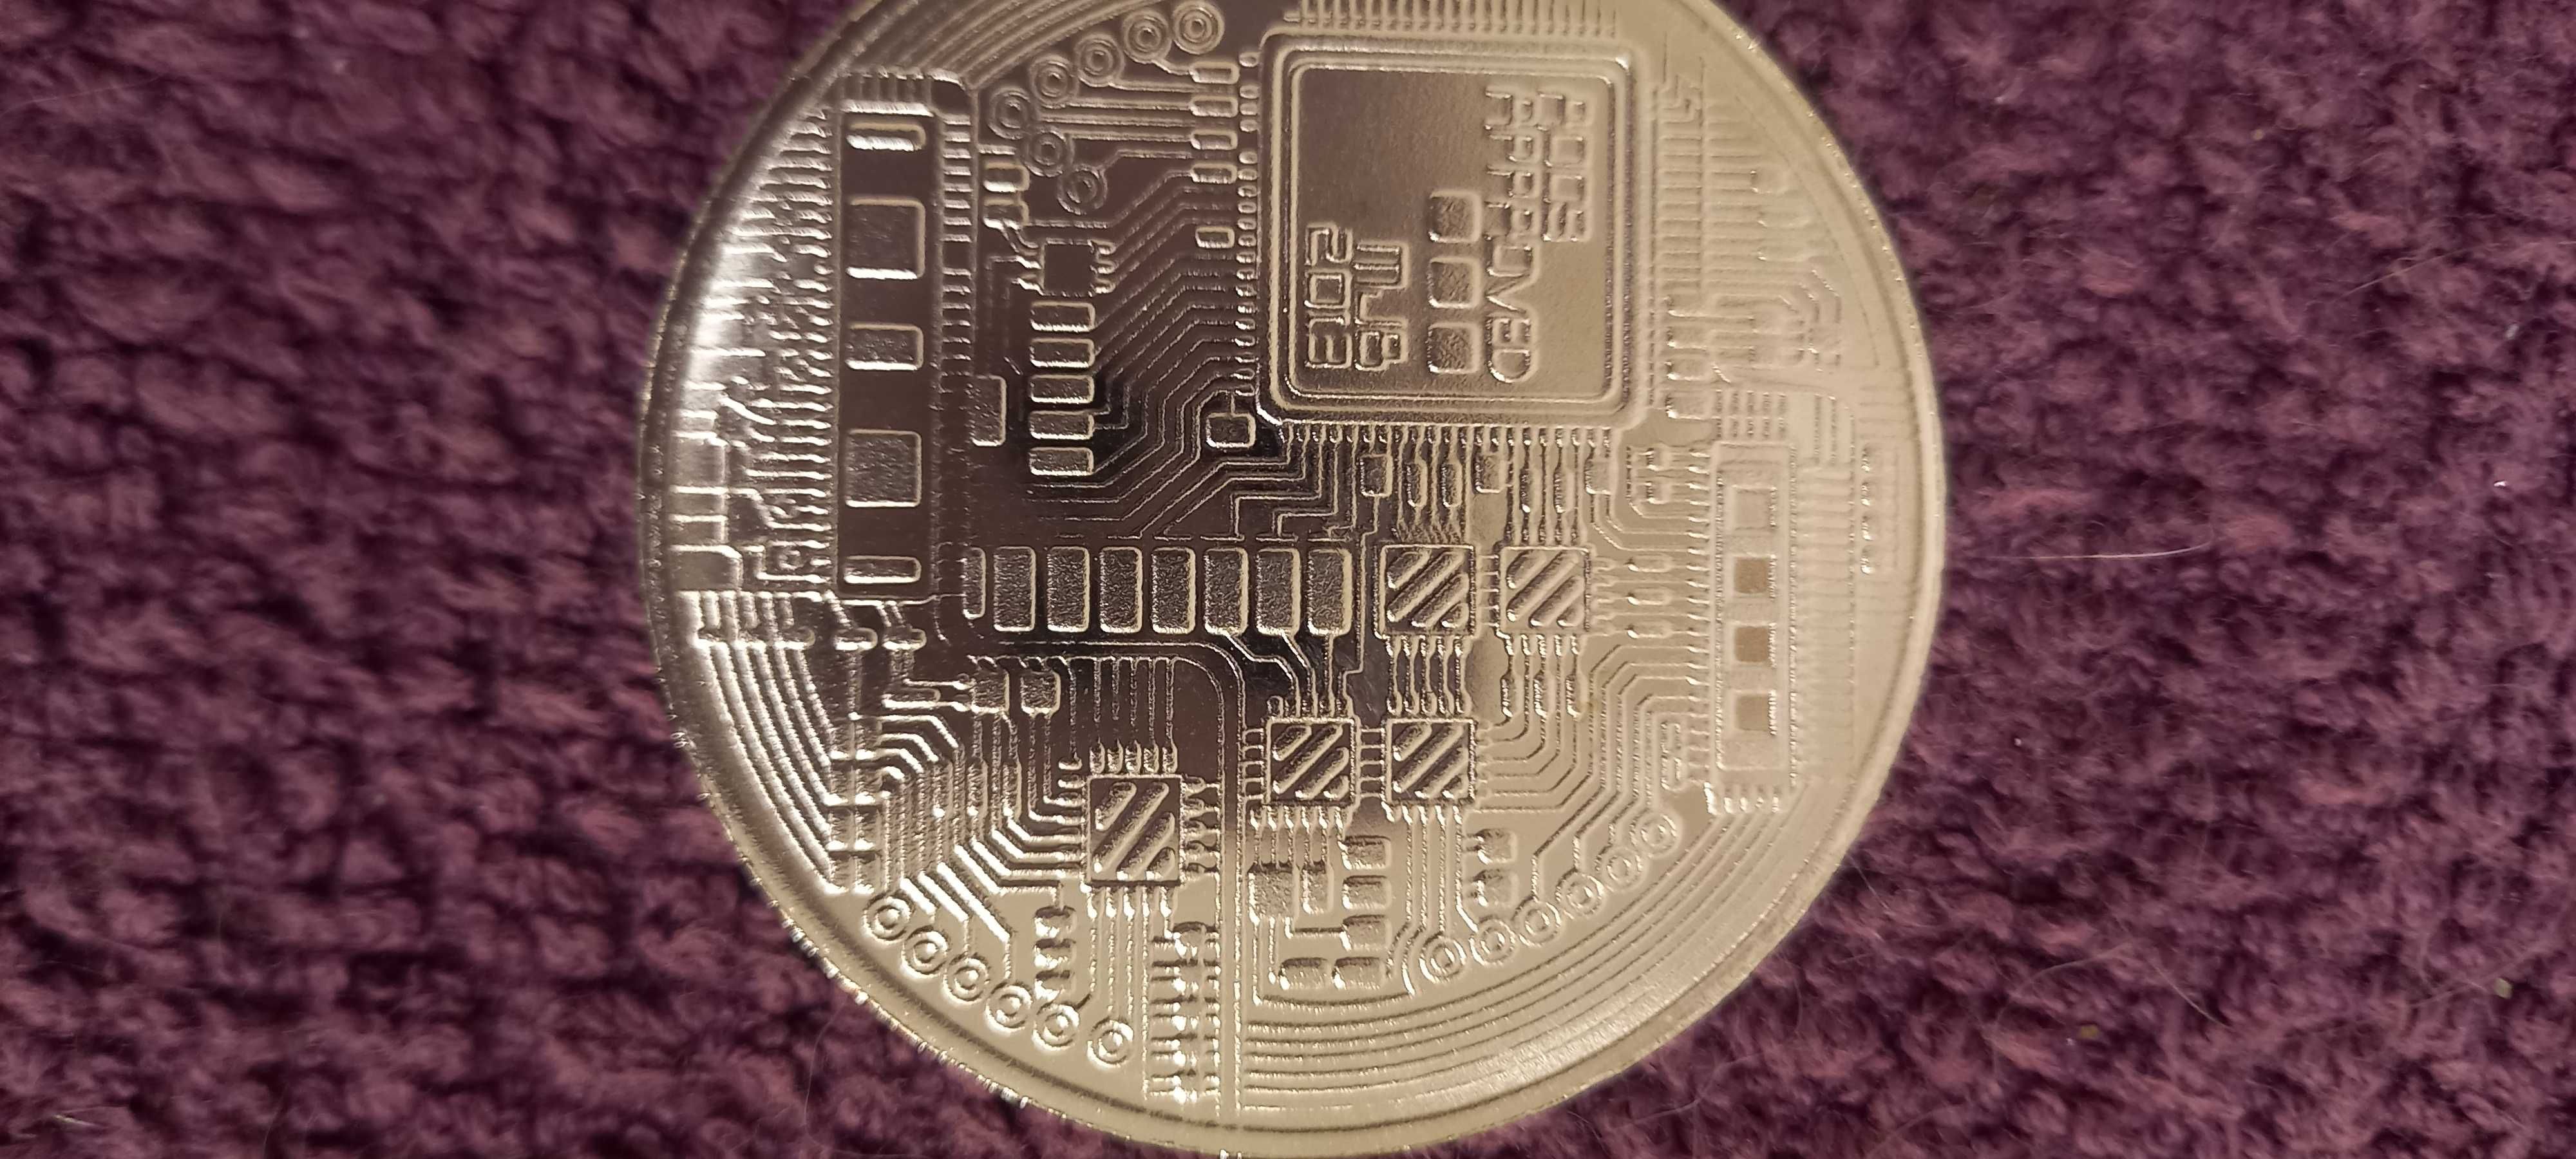 Монета  биткоин.